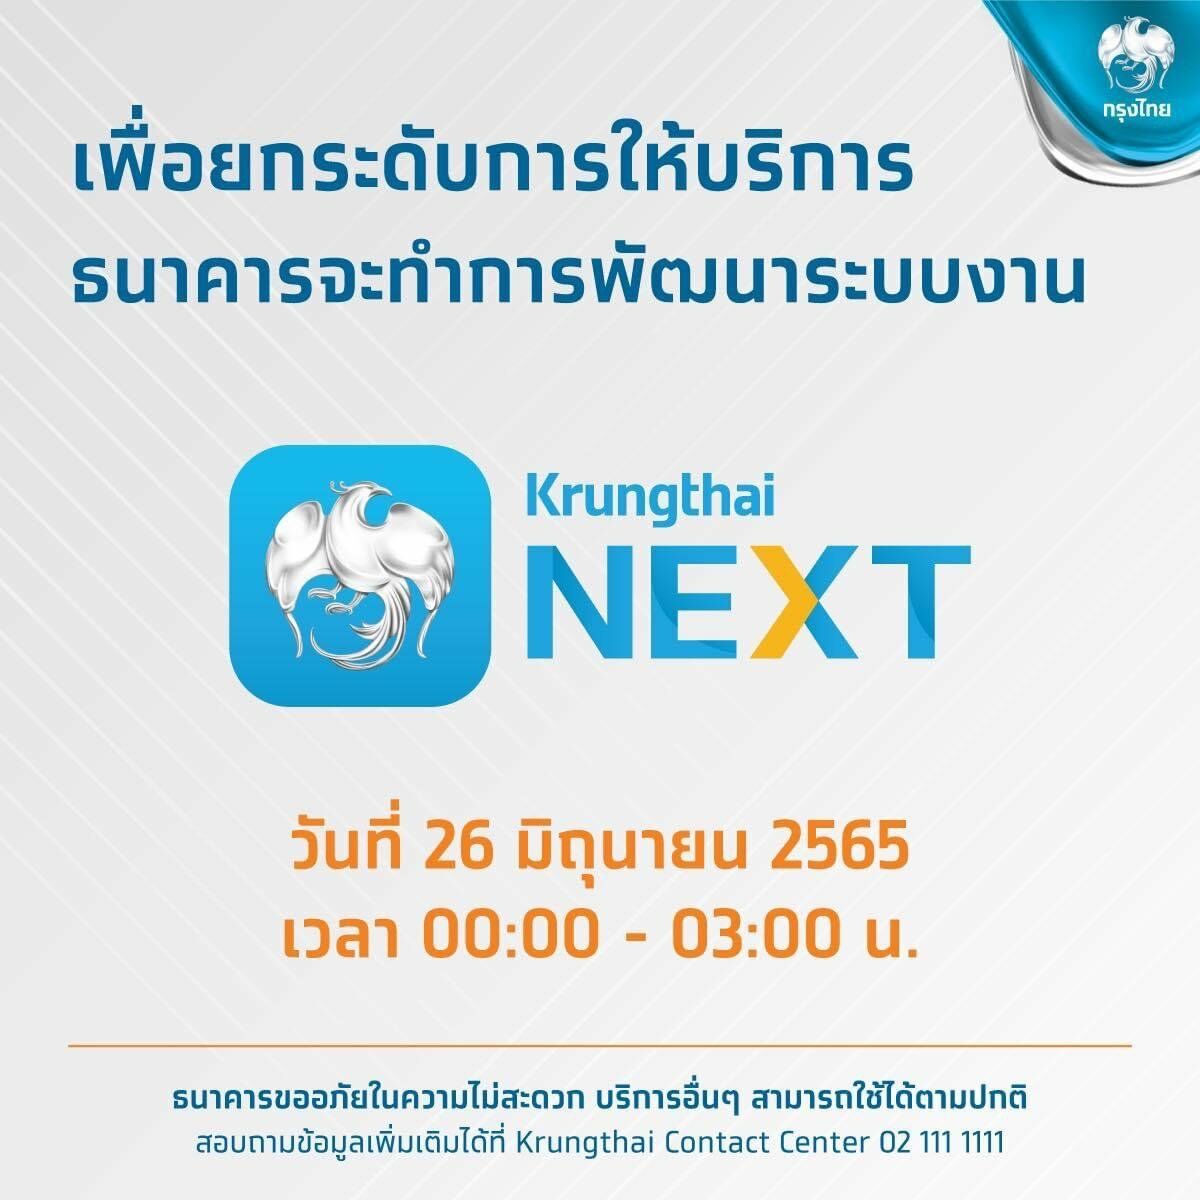 ปิดปรับปรุง Krungthai NEXT